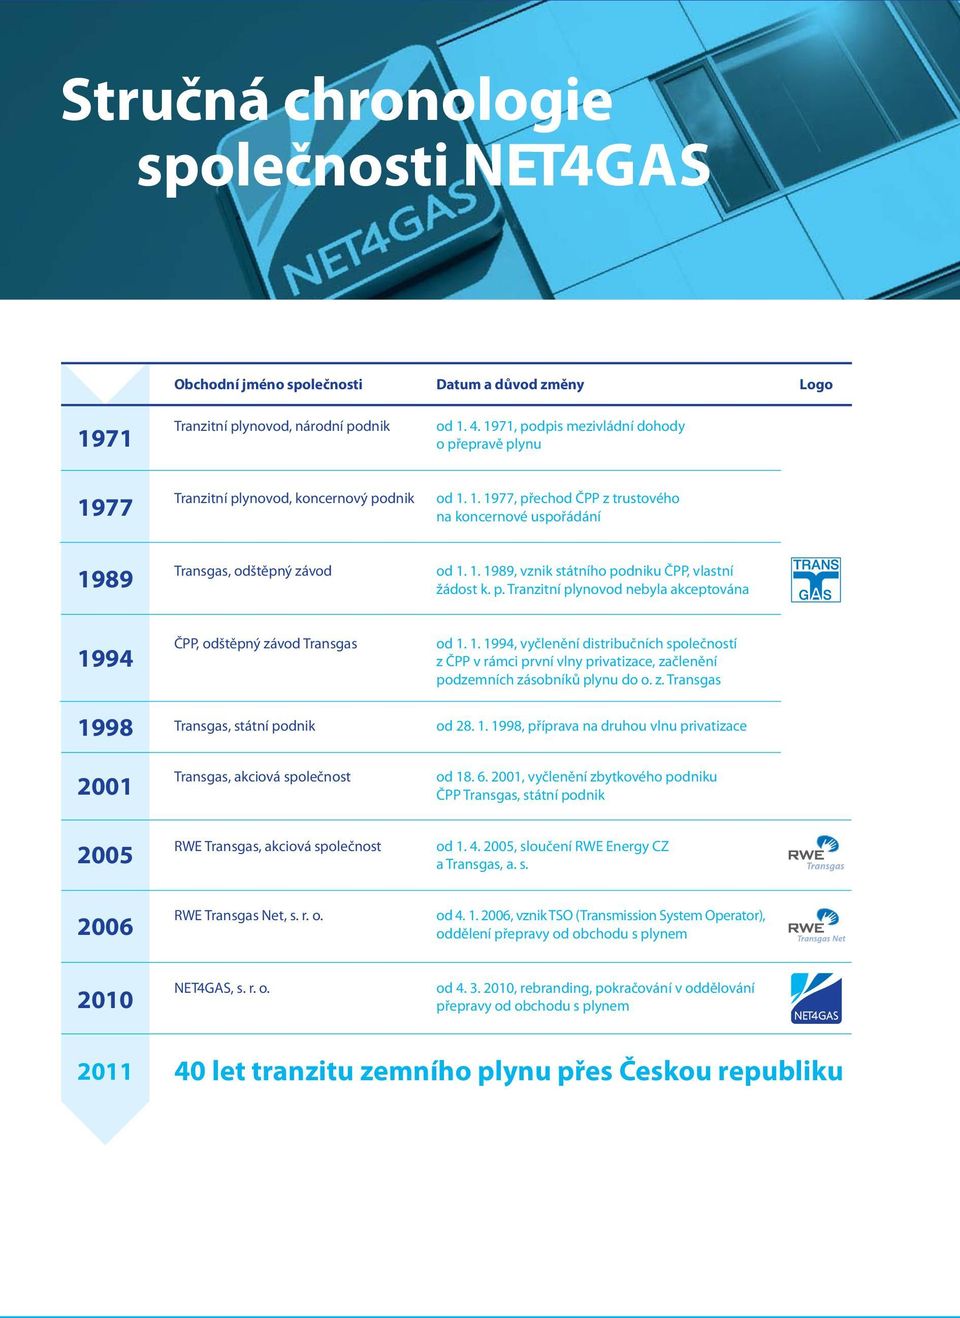 p. Tranzitní plynovod nebyla akceptována 1994 1998 ČPP, odštěpný závod Transgas Transgas, státní podnik od 1. 1. 1994, vyčlenění distribučních společností z ČPP v rámci první vlny privatizace, začlenění podzemních zásobníků plynu do o.